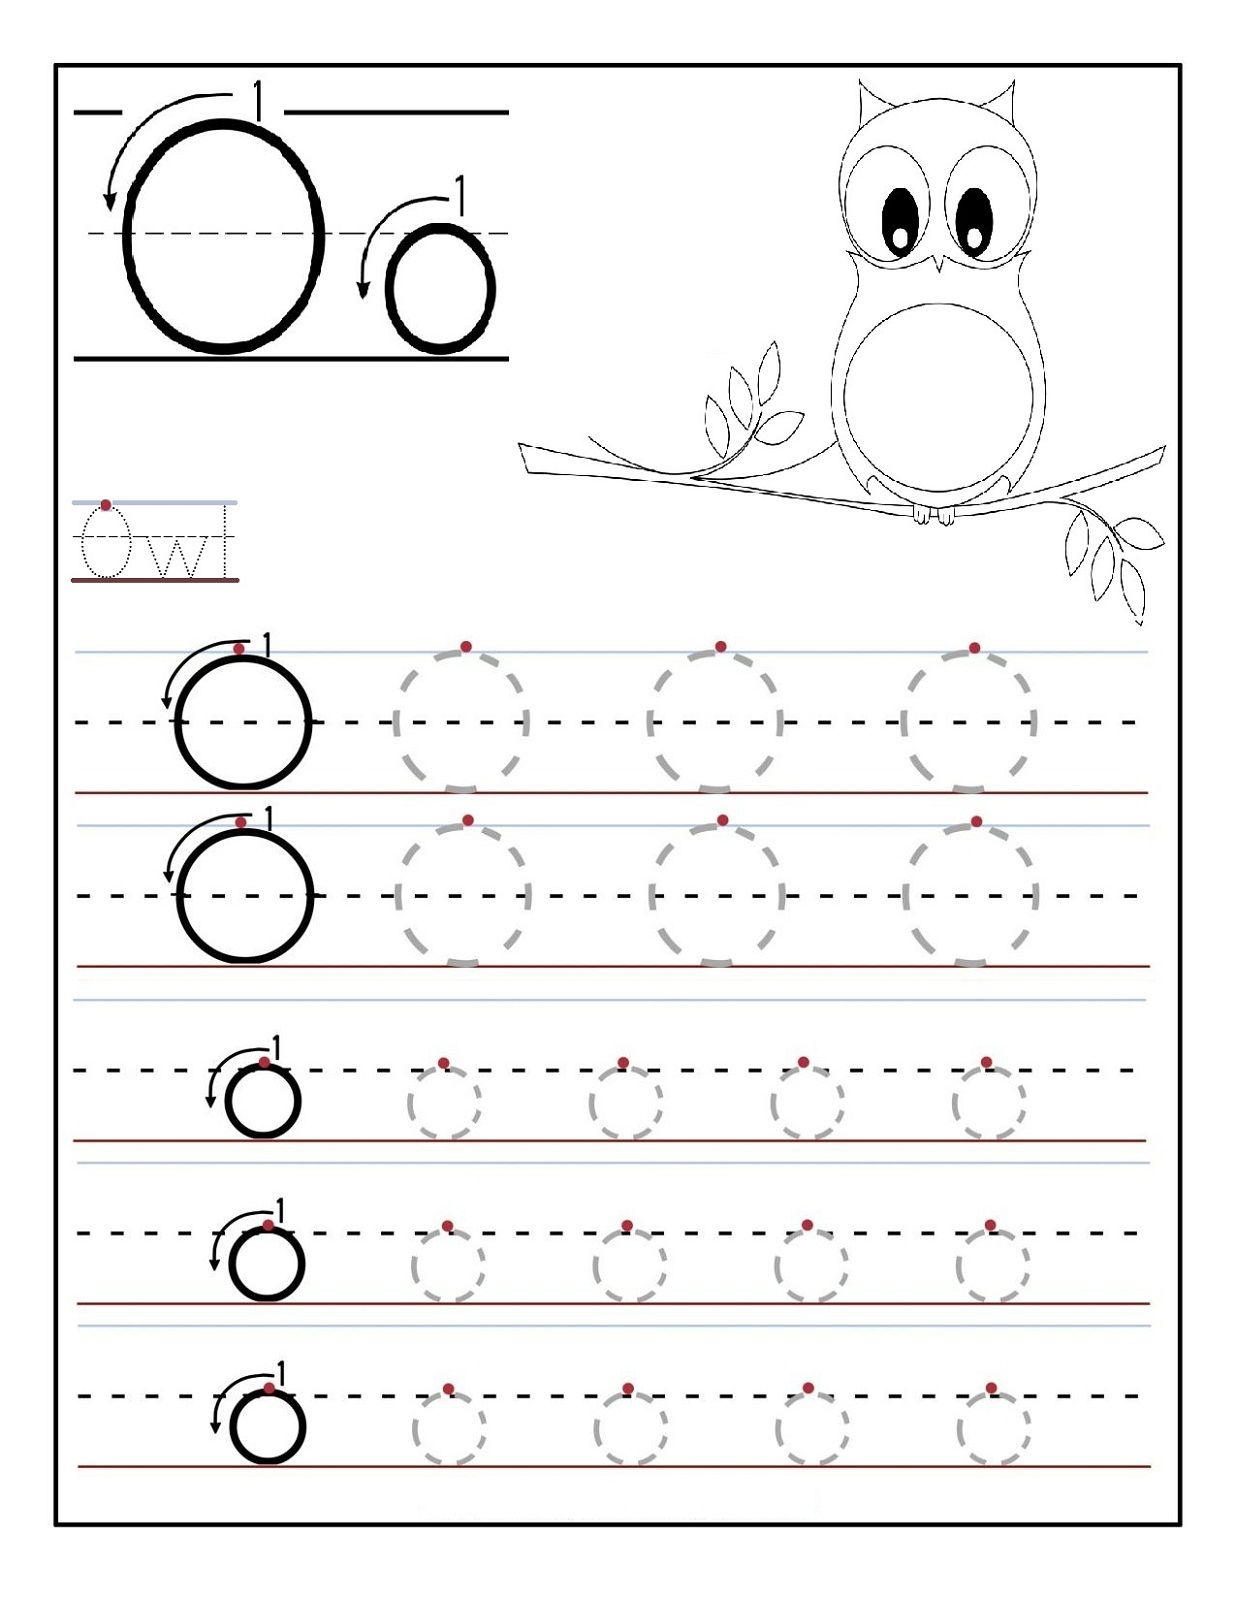 Letter O Worksheets For Preschool | Letter O Worksheets